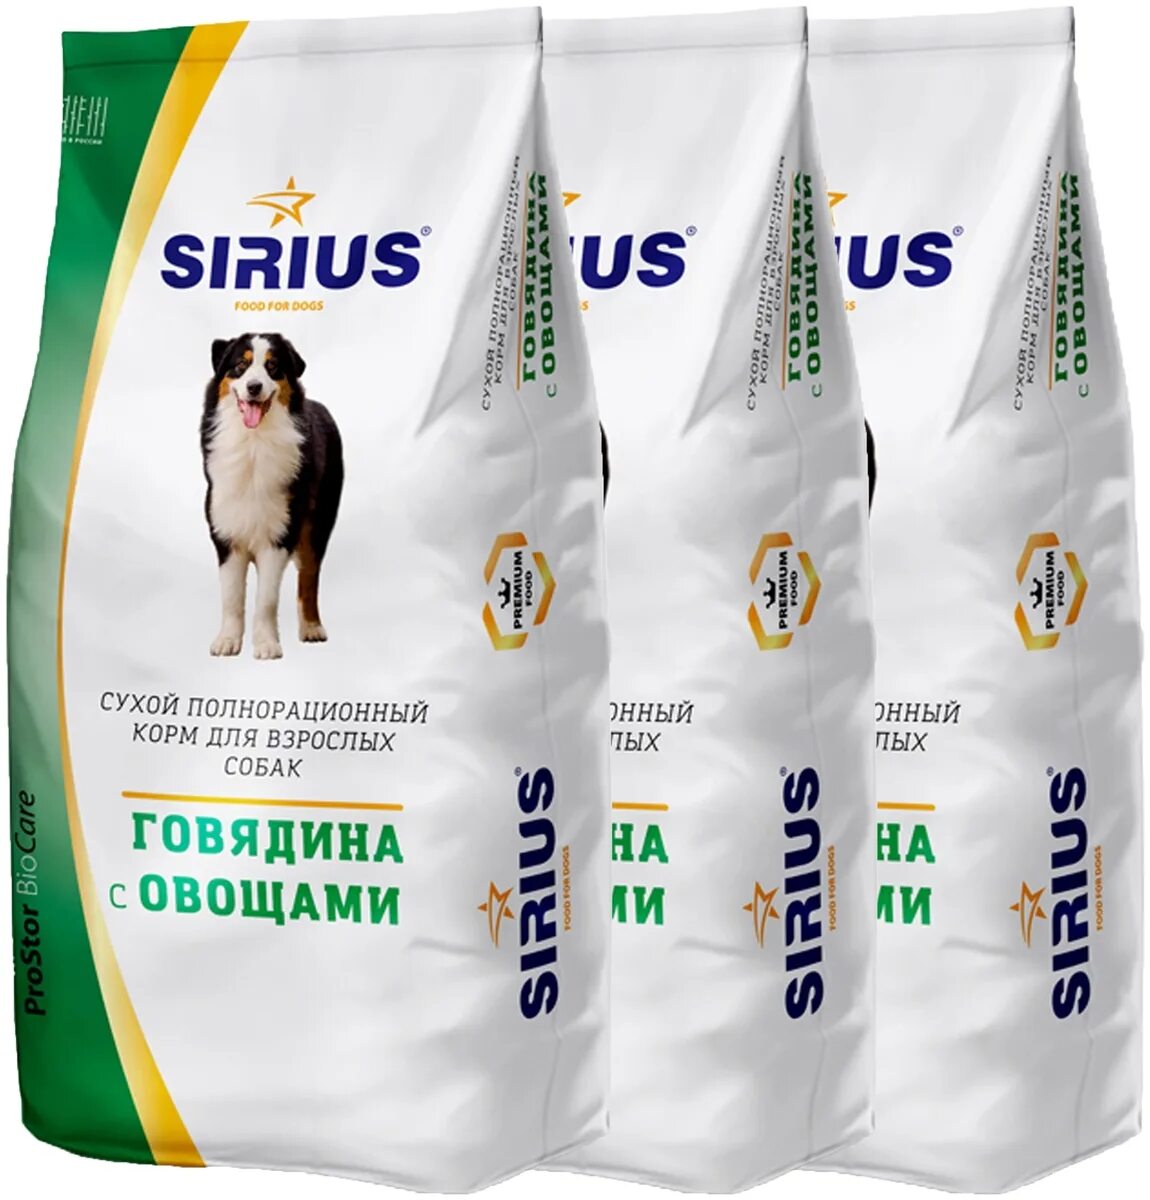 Корм сириус для собак 15 кг. Сириус собака говядина/овощи, 15кг. Сириус говядина с овощами для собак. Сухой корм для собак Sirius говядина 15 кг. Сириус корм для собак говядина с овощами.